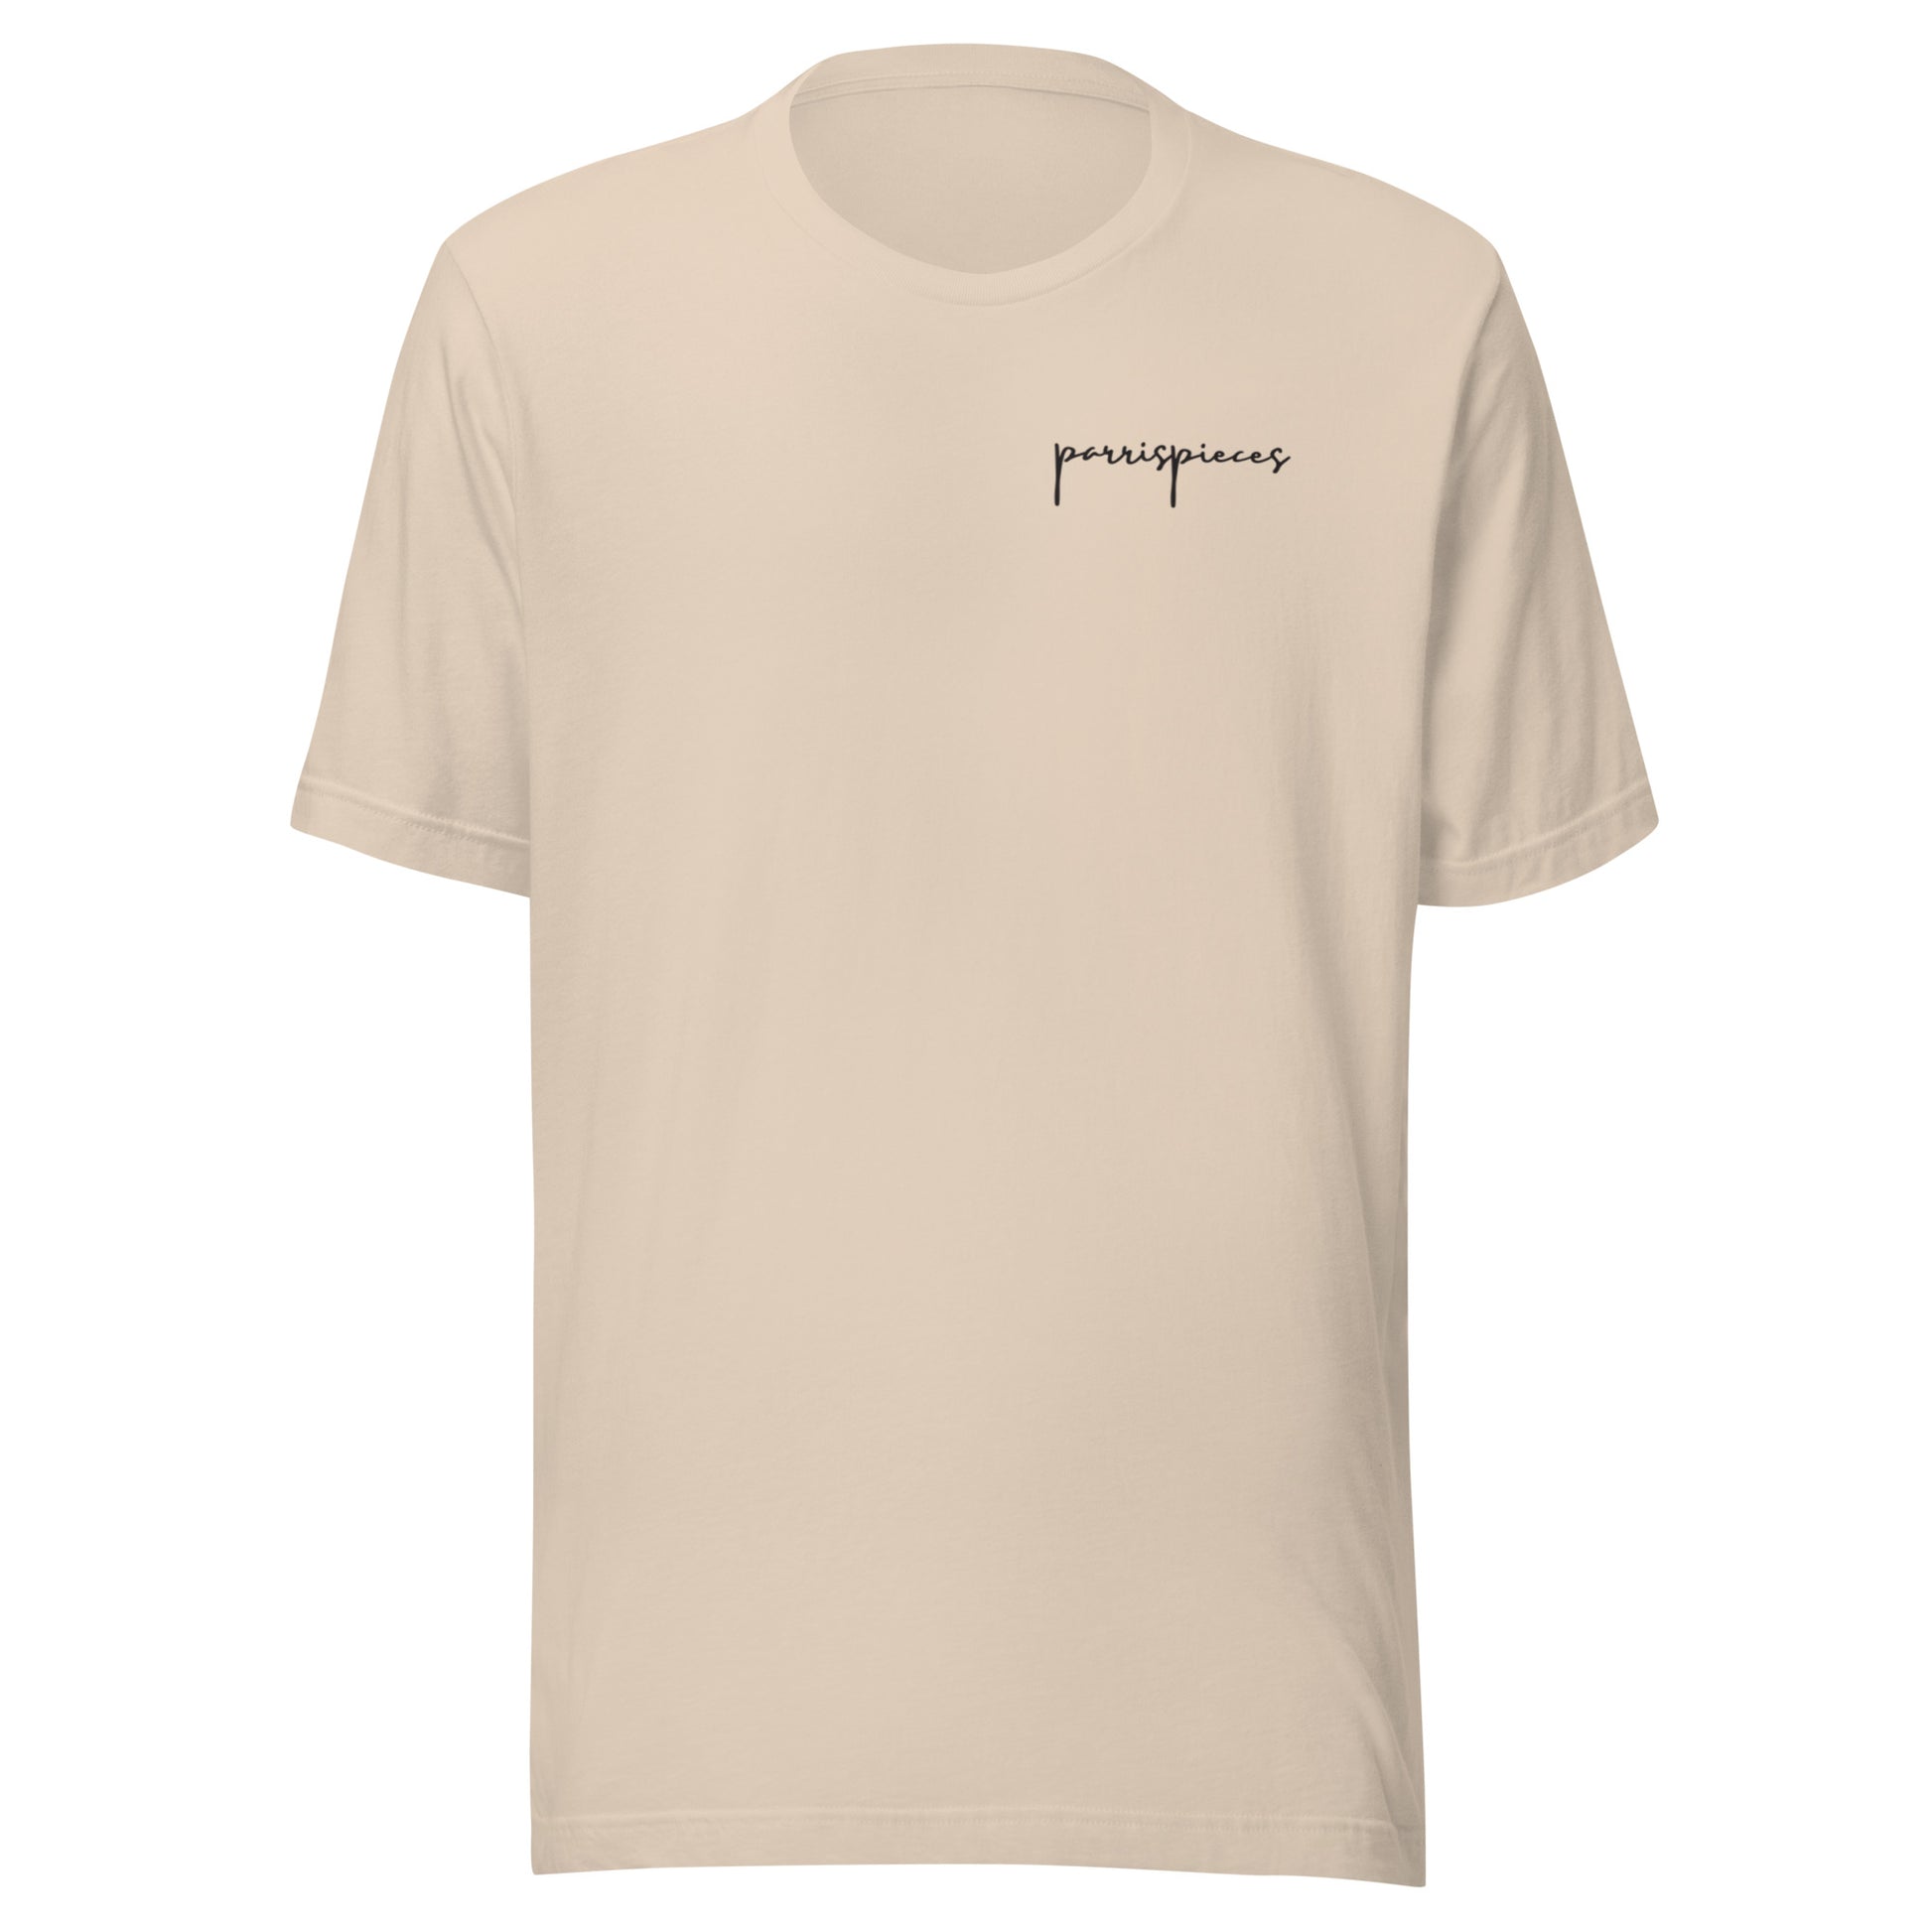 PARRISPIECES T-Shirt - ParrisPieces